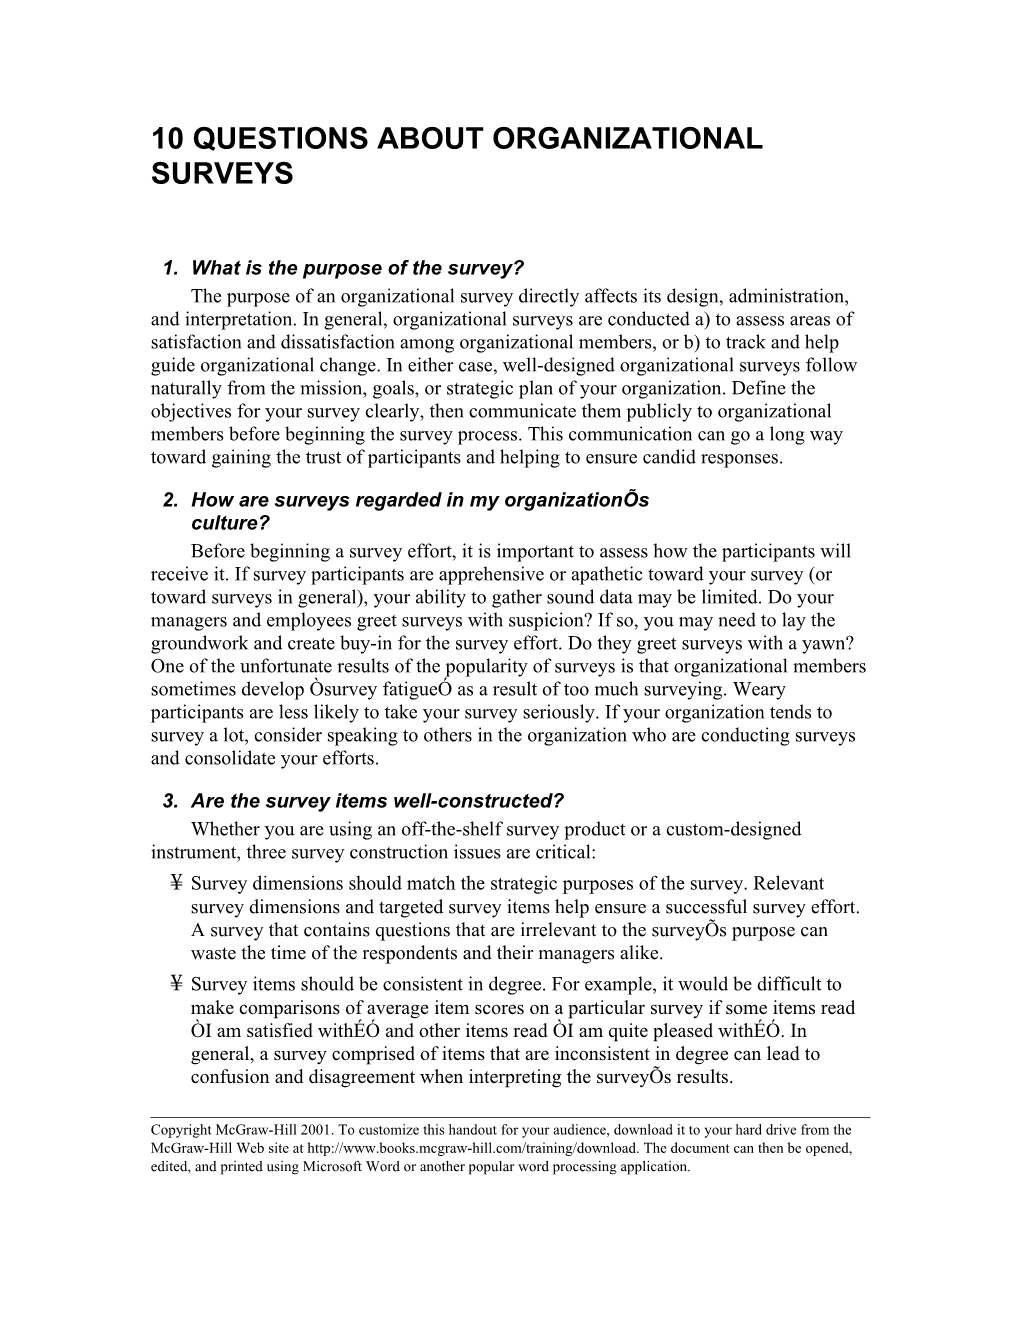 10 Questions About Organizational Surveys